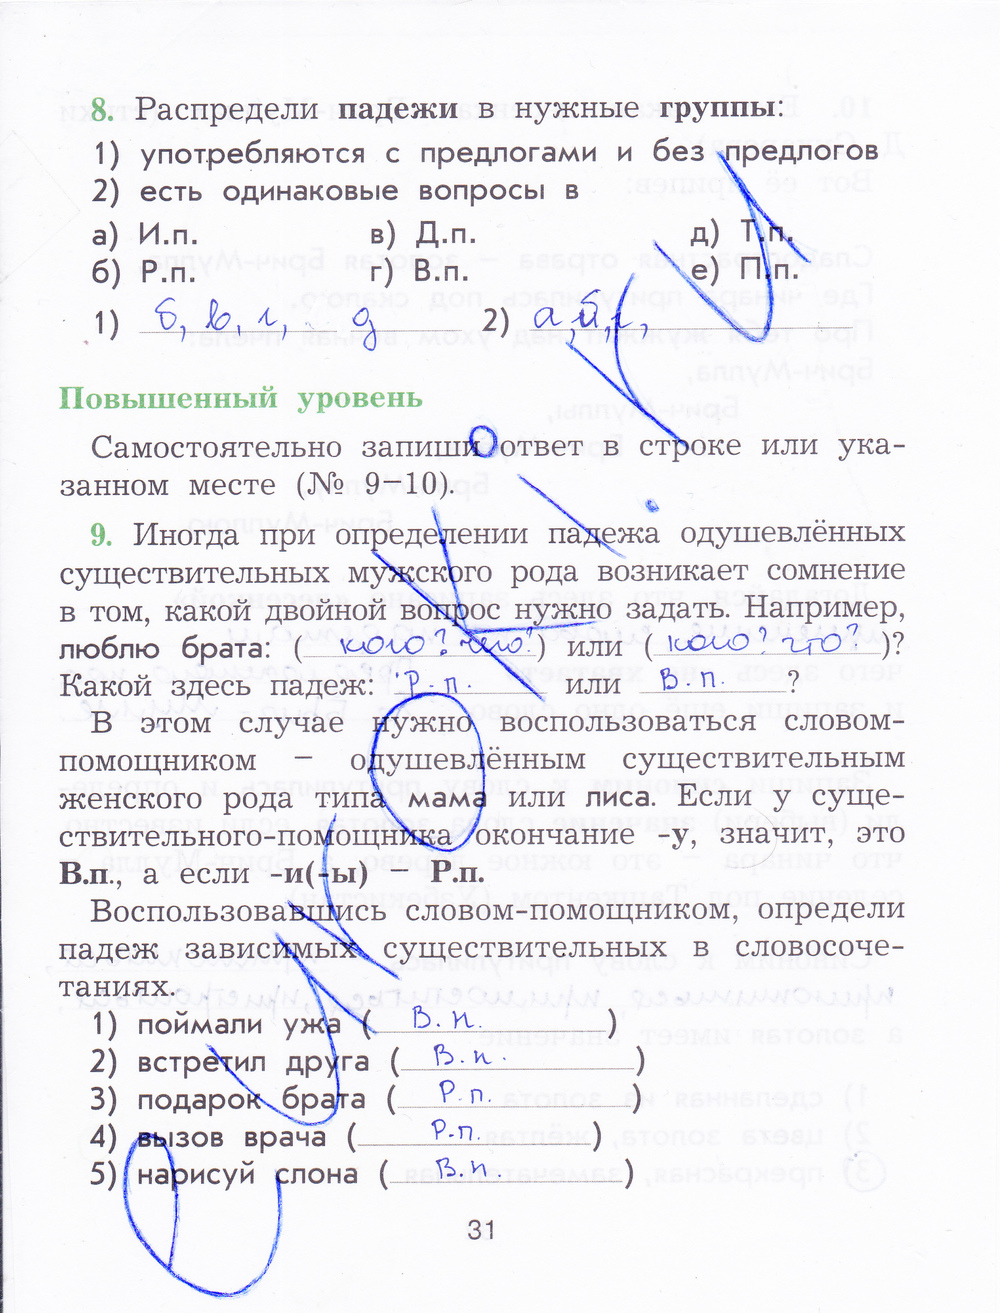 Гдз для рабочей тетради по русскому языку 2 класс исаева